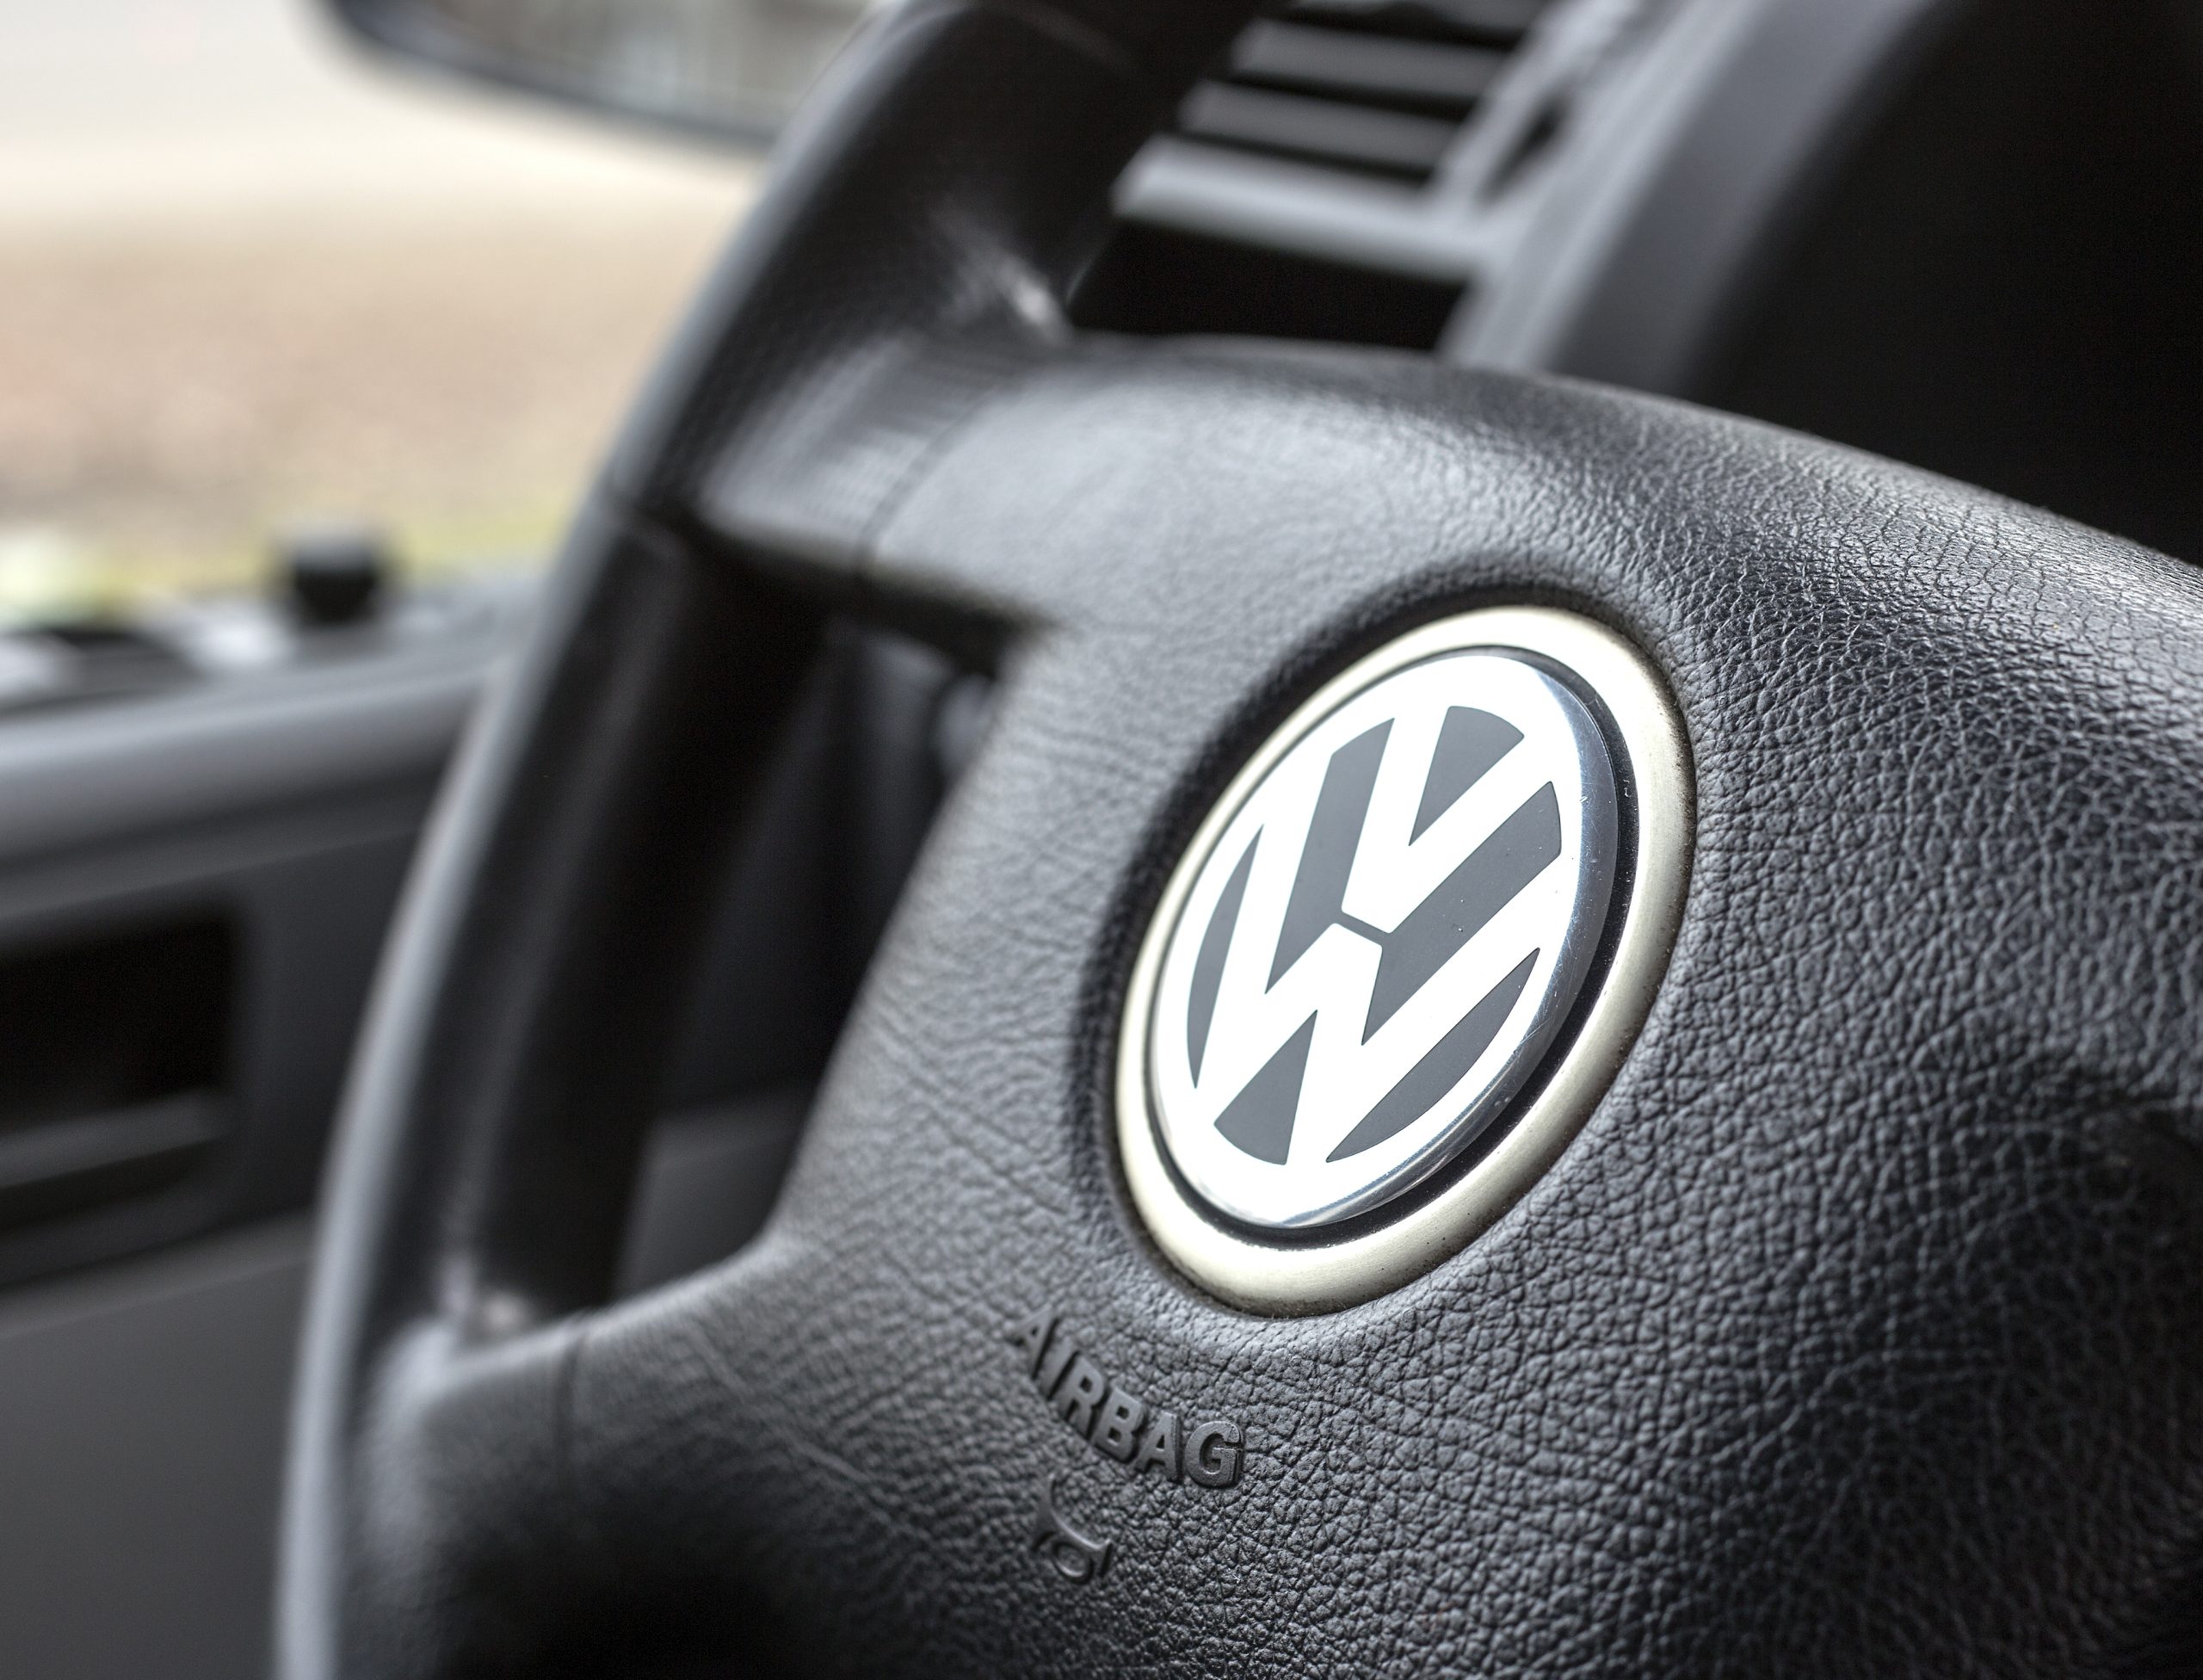 Cerca de 117 mil carros em Portugal afetados pela fraude da Volkswagen, diz Pires de Lima